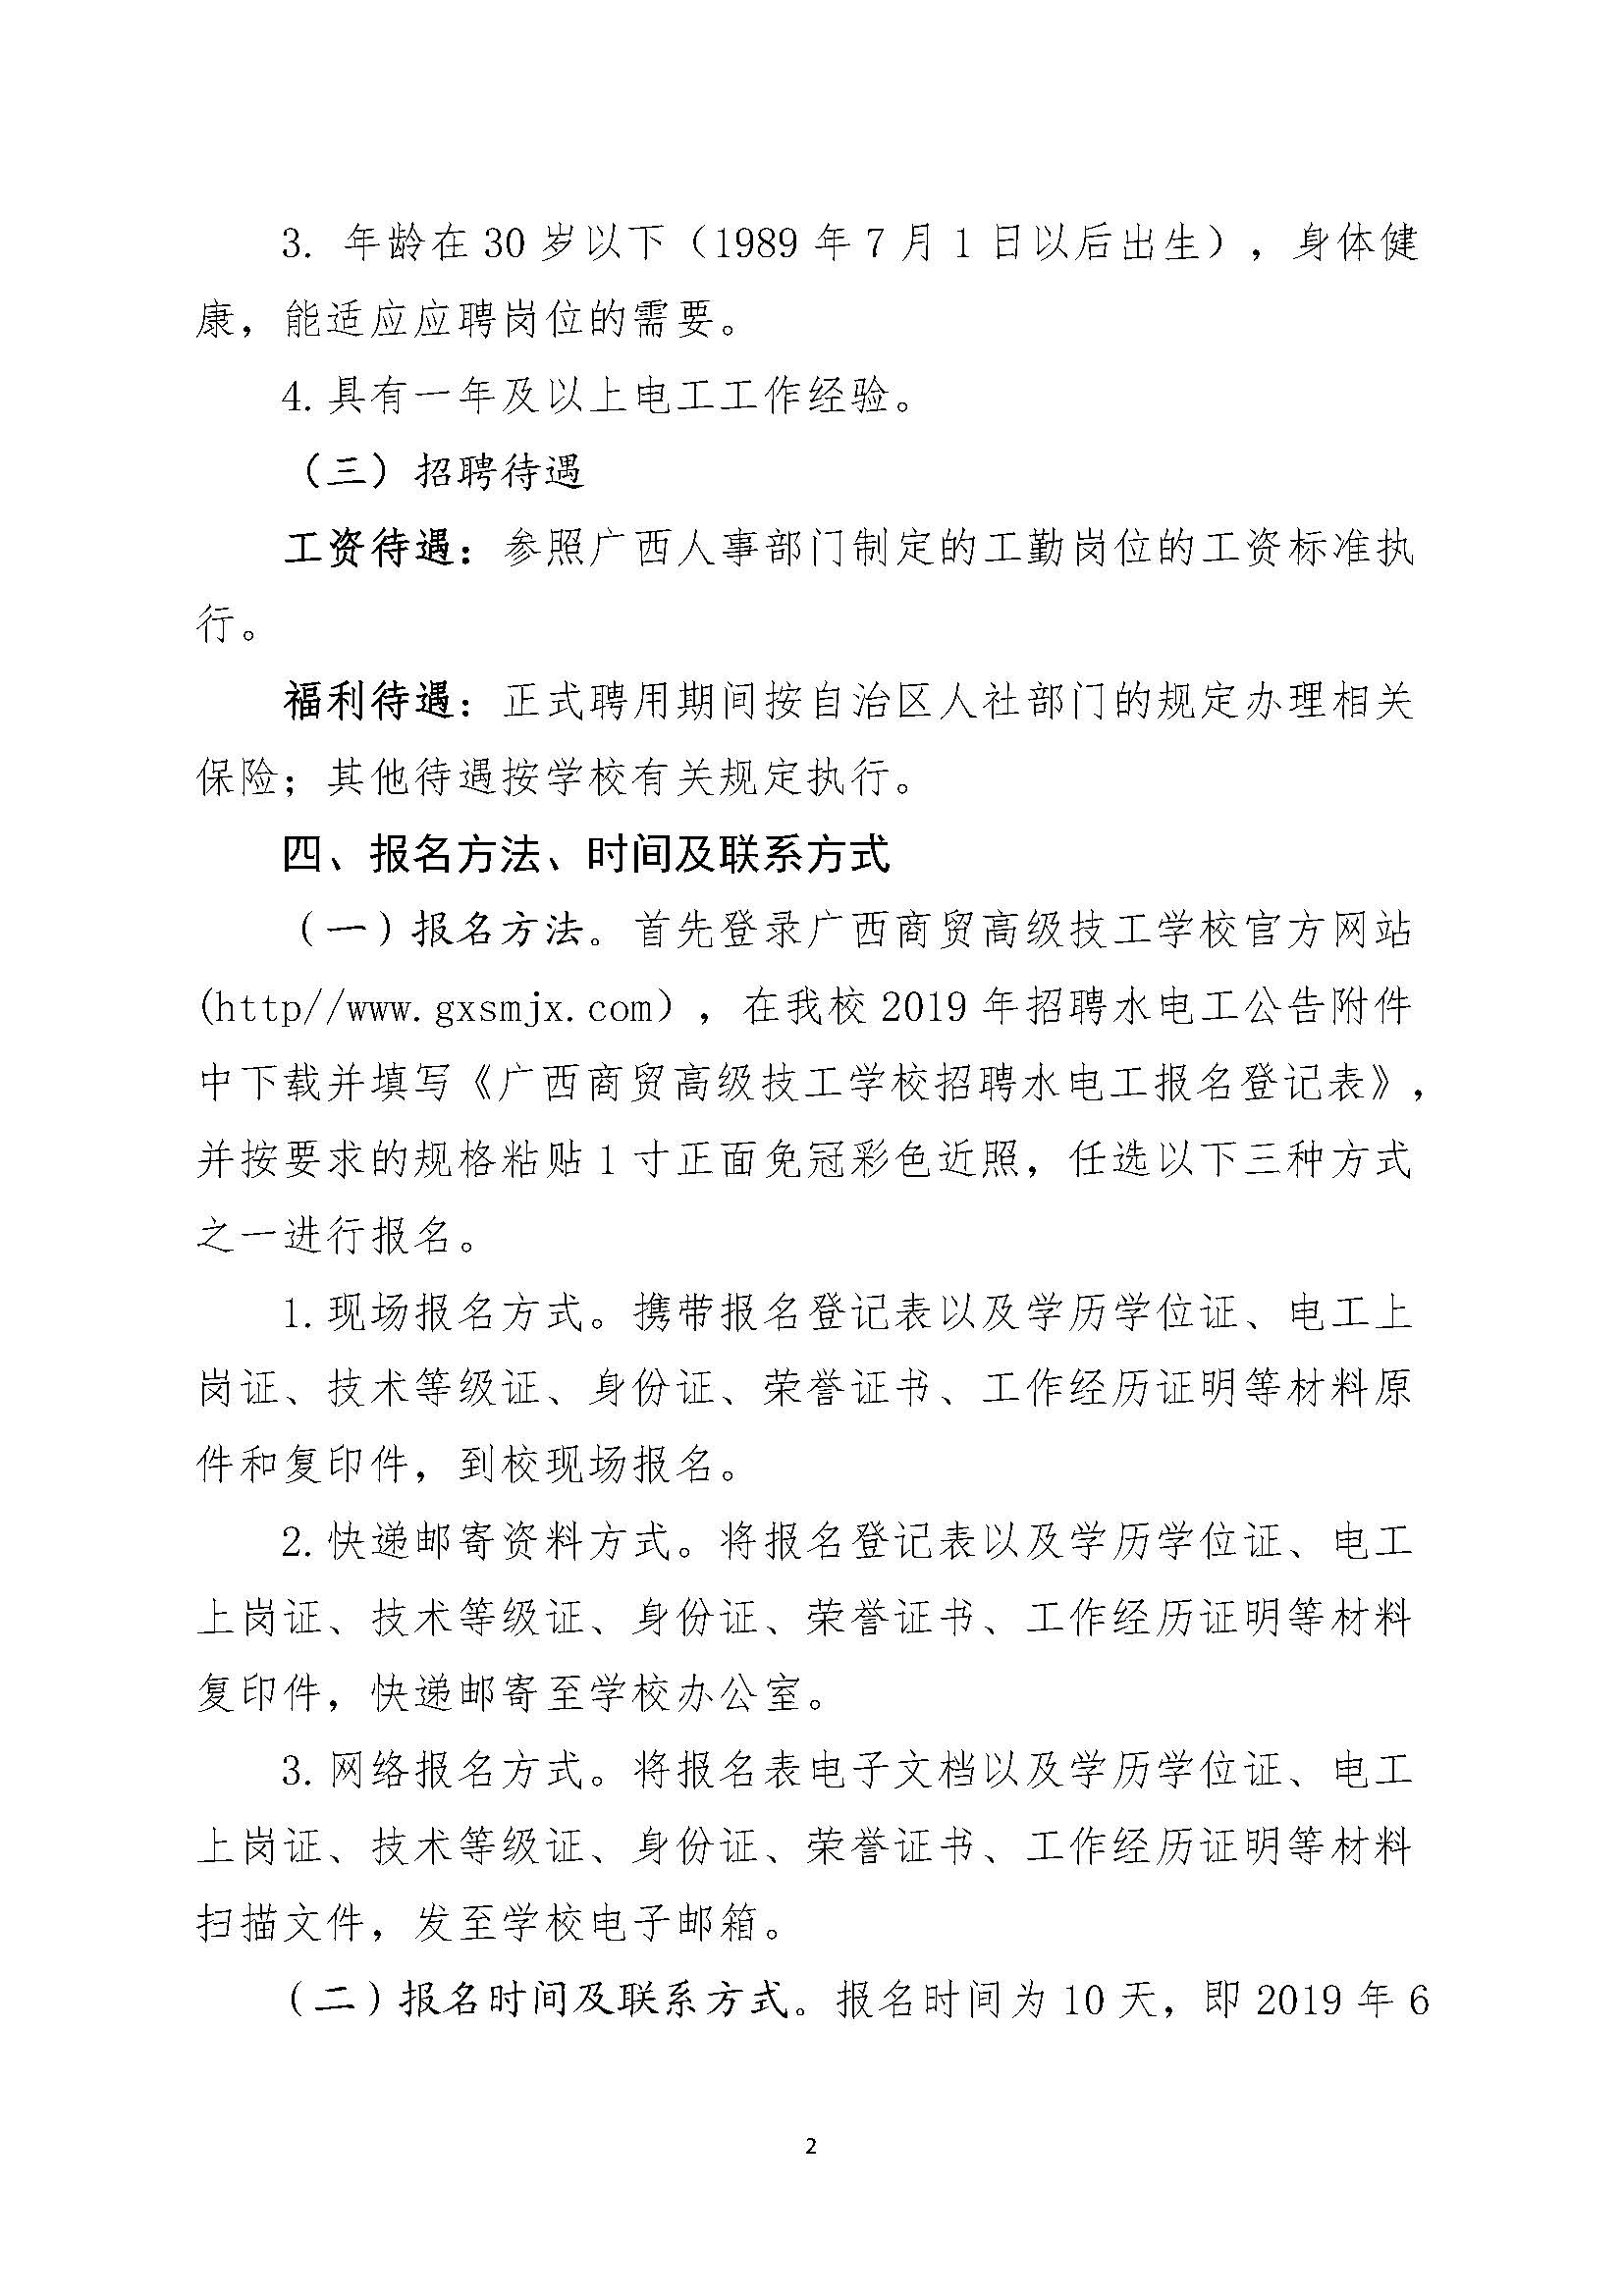 广西商贸高级技校2019年招聘水电工公告（6.18定稿）_页面_2.jpg